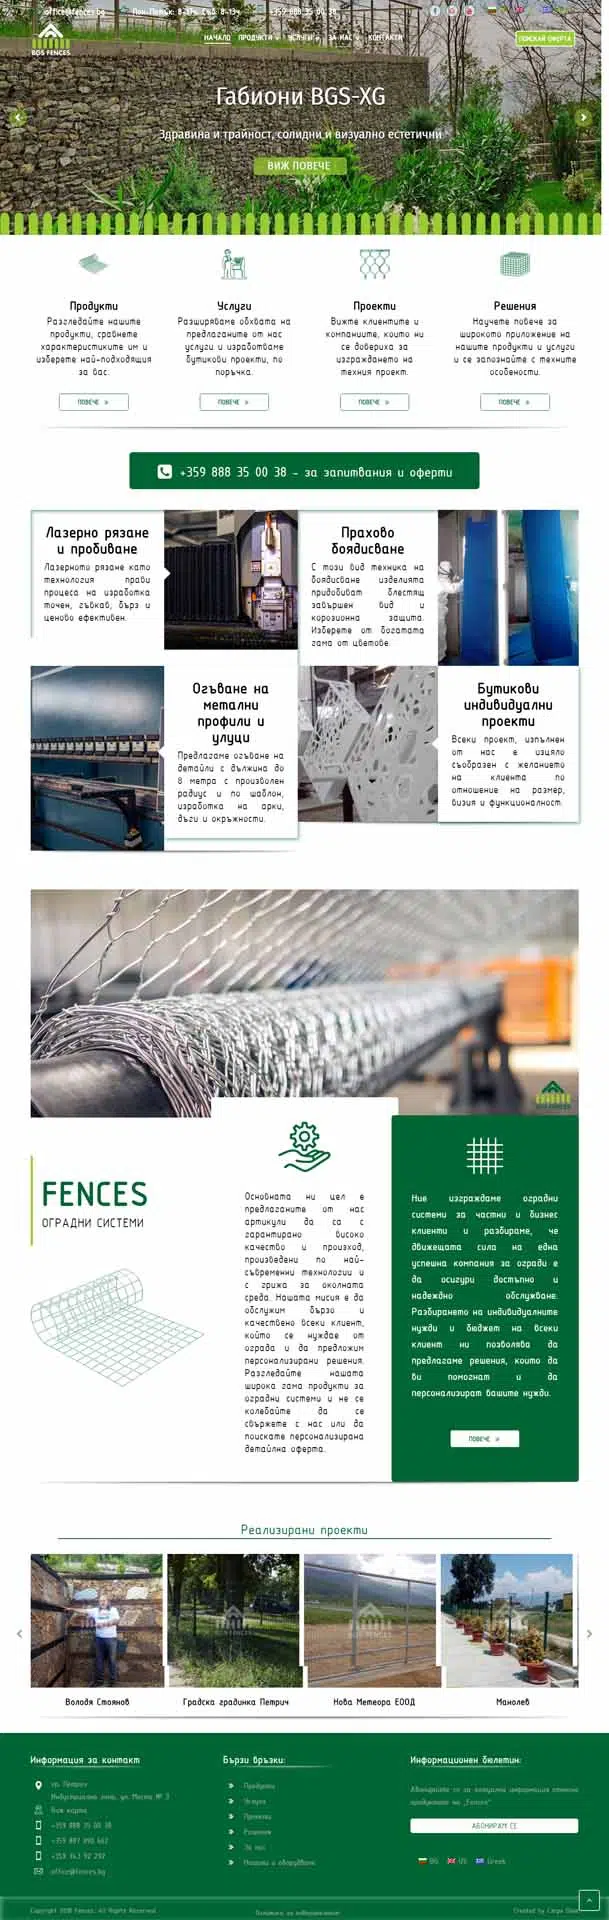 CarpeDiem- Fences Website (1)